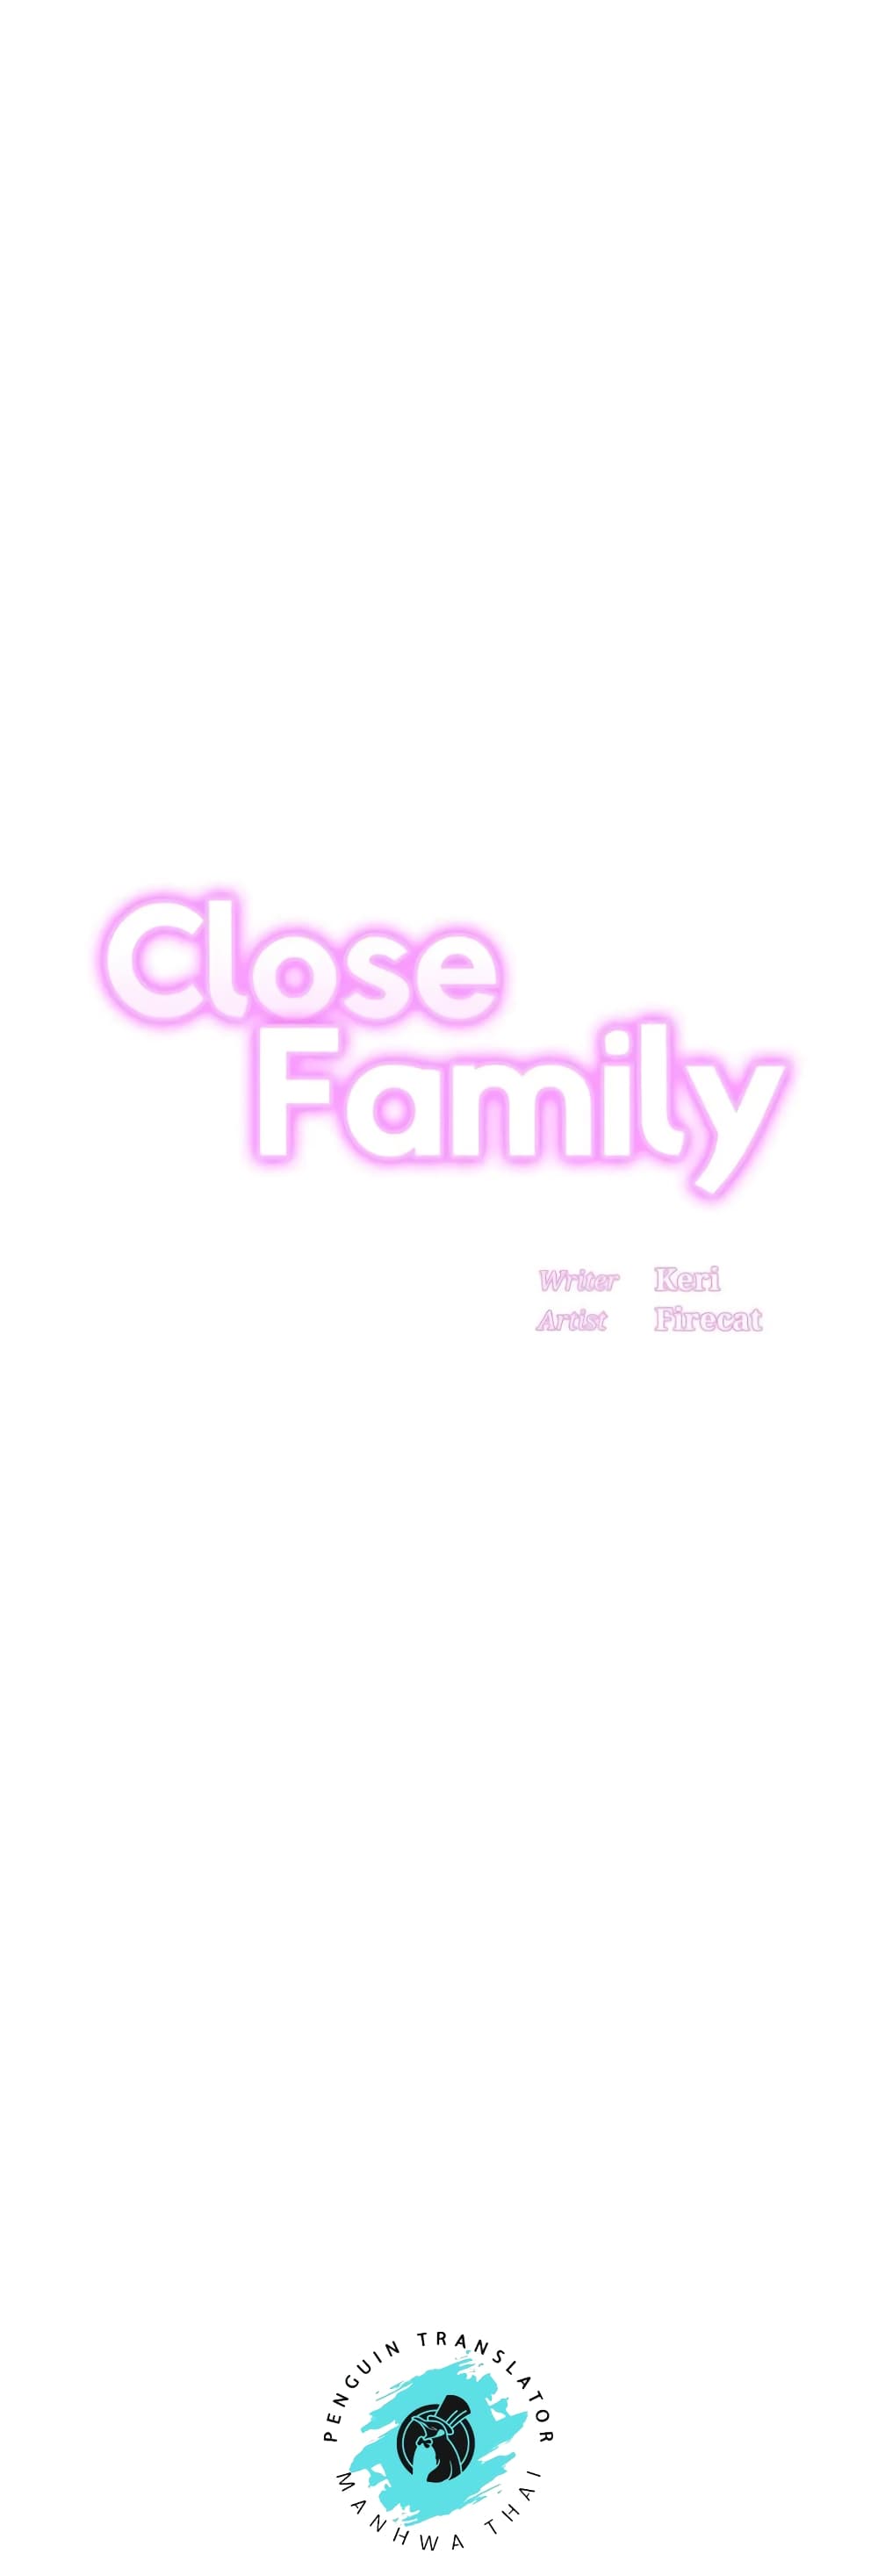 Close Family 49-49